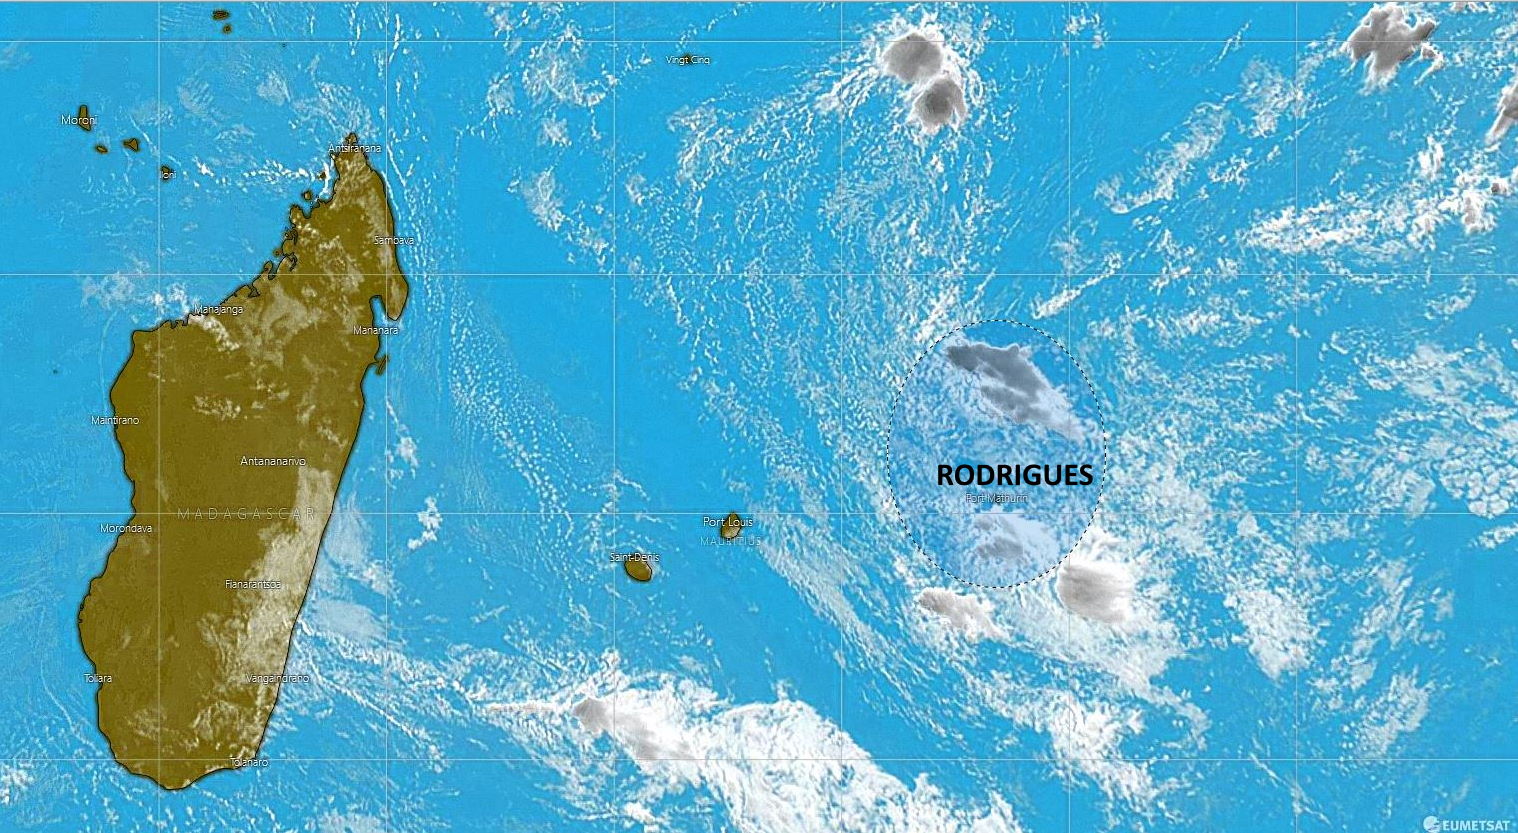 Bulletin prévision - Rodrigues  COMMUNIQUÉ DE LA MÉTÉO POUR RODRIGUES ÉMIS À 04H30 CE VENDREDI 05 NOVEMBRE 2021.     SITUATION GÉNÉRALE:  1. Une zone de convergence sur la région, occasionnent la formation des nuages actif dans le voisinage de l'île. 2. A 04h00, la zone de basse pression se trouvait à environ 870 km au Nord de Rodrigues. Elle maintient son déplacement lent dans une direction générale de l'Ouest.   PRÉVISIONS POUR LES PROCHAINES 24 HEURES:Ciel nuageux à couvert  avec des averses éparses. Les averses seront modérées à localement fortes par moments, accompagnées d'orages. Ces averses pourraient provoquer des accumulations d'eau dans certaines régions à basse altitude.  La température maximale variera entre 24 et 27 degrés Celsius et la minimale sera entre 21 et 24 degrés Celsius.  Vent du Sud-Est d'environ 30 km/h avec des rafales de l'ordre de 60 km/h aux endroits exposés, se renforçant sous les averses. Mer forte au-delà des récifs avec des vagues de l'ordre de 2 mètres 50. Les sorties en haute mer sont déconseillées.    Quelques conseils pratiques : 1. En cas de grosse averses, il est fortement conseillé au public d'éviter les régions inondables, les cours d’eau et les radiers.  2. La visibilité sera considerablement réduite durant les fortes pluies et due la présence de poches de brouillard, les usagers de la route sont priés d'être très prudents.  3. En cas d'orages, le public est conseillé de rester à l'abri et d'éviter les plaines, les sorties en mer et ne pas s'abriter sous les arbres.   La pluviométrie durant les dernières 24 heures du 04 Novembre 2021 à 04h00 jusqu'au 05 Novembre 2021 à 04h00:  Pointe Canon             :  32.6 mm.  Plaine Corail              :  38.0 mm.  Montagne du Sable  :  27.0 mm.  Patate Théophile       : 40.0 mm.     Marées hautes:  12h49 et demain 01h14.  Marées basses: 06h37 et 19h07.  Lever du soleil      : 05h02.  Coucher du soleil : 17h57.